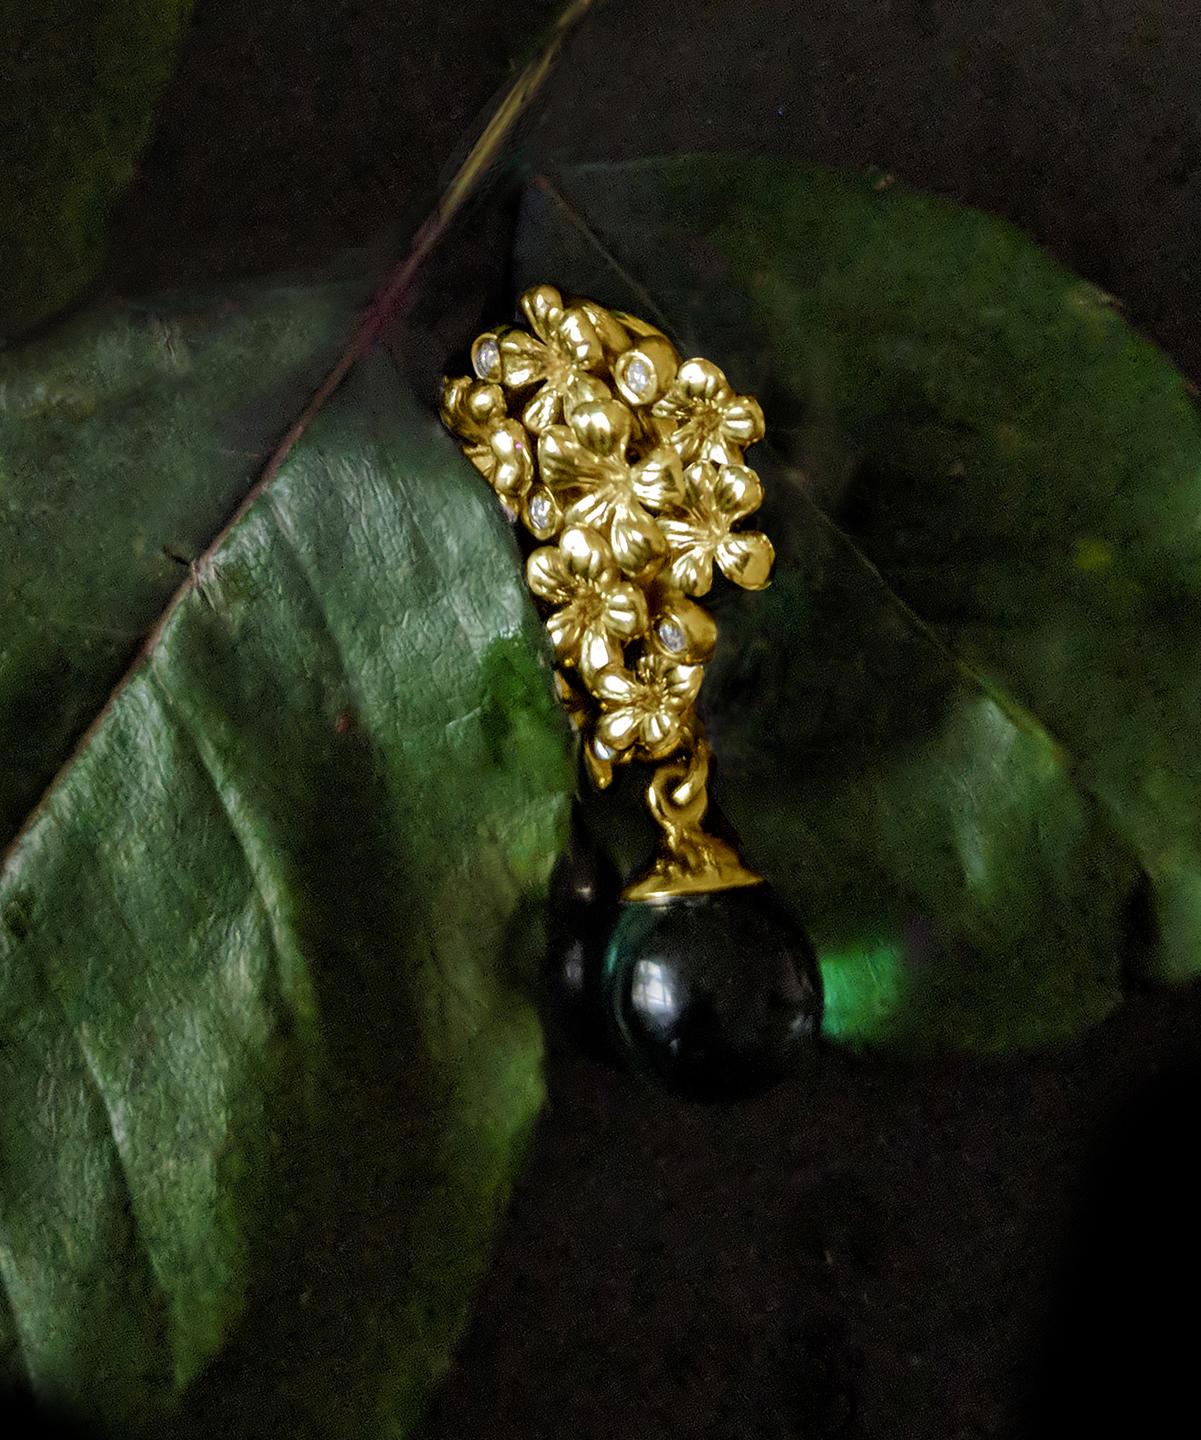 Ce collier à pendentif Plum Blossom présente un design contemporain et est réalisé en or jaune 18 carats. Il comprend une tourmaline cabochon verte et 5 diamants ronds de qualité supérieure (VS, F-G) provenant d'une société allemande de pierres